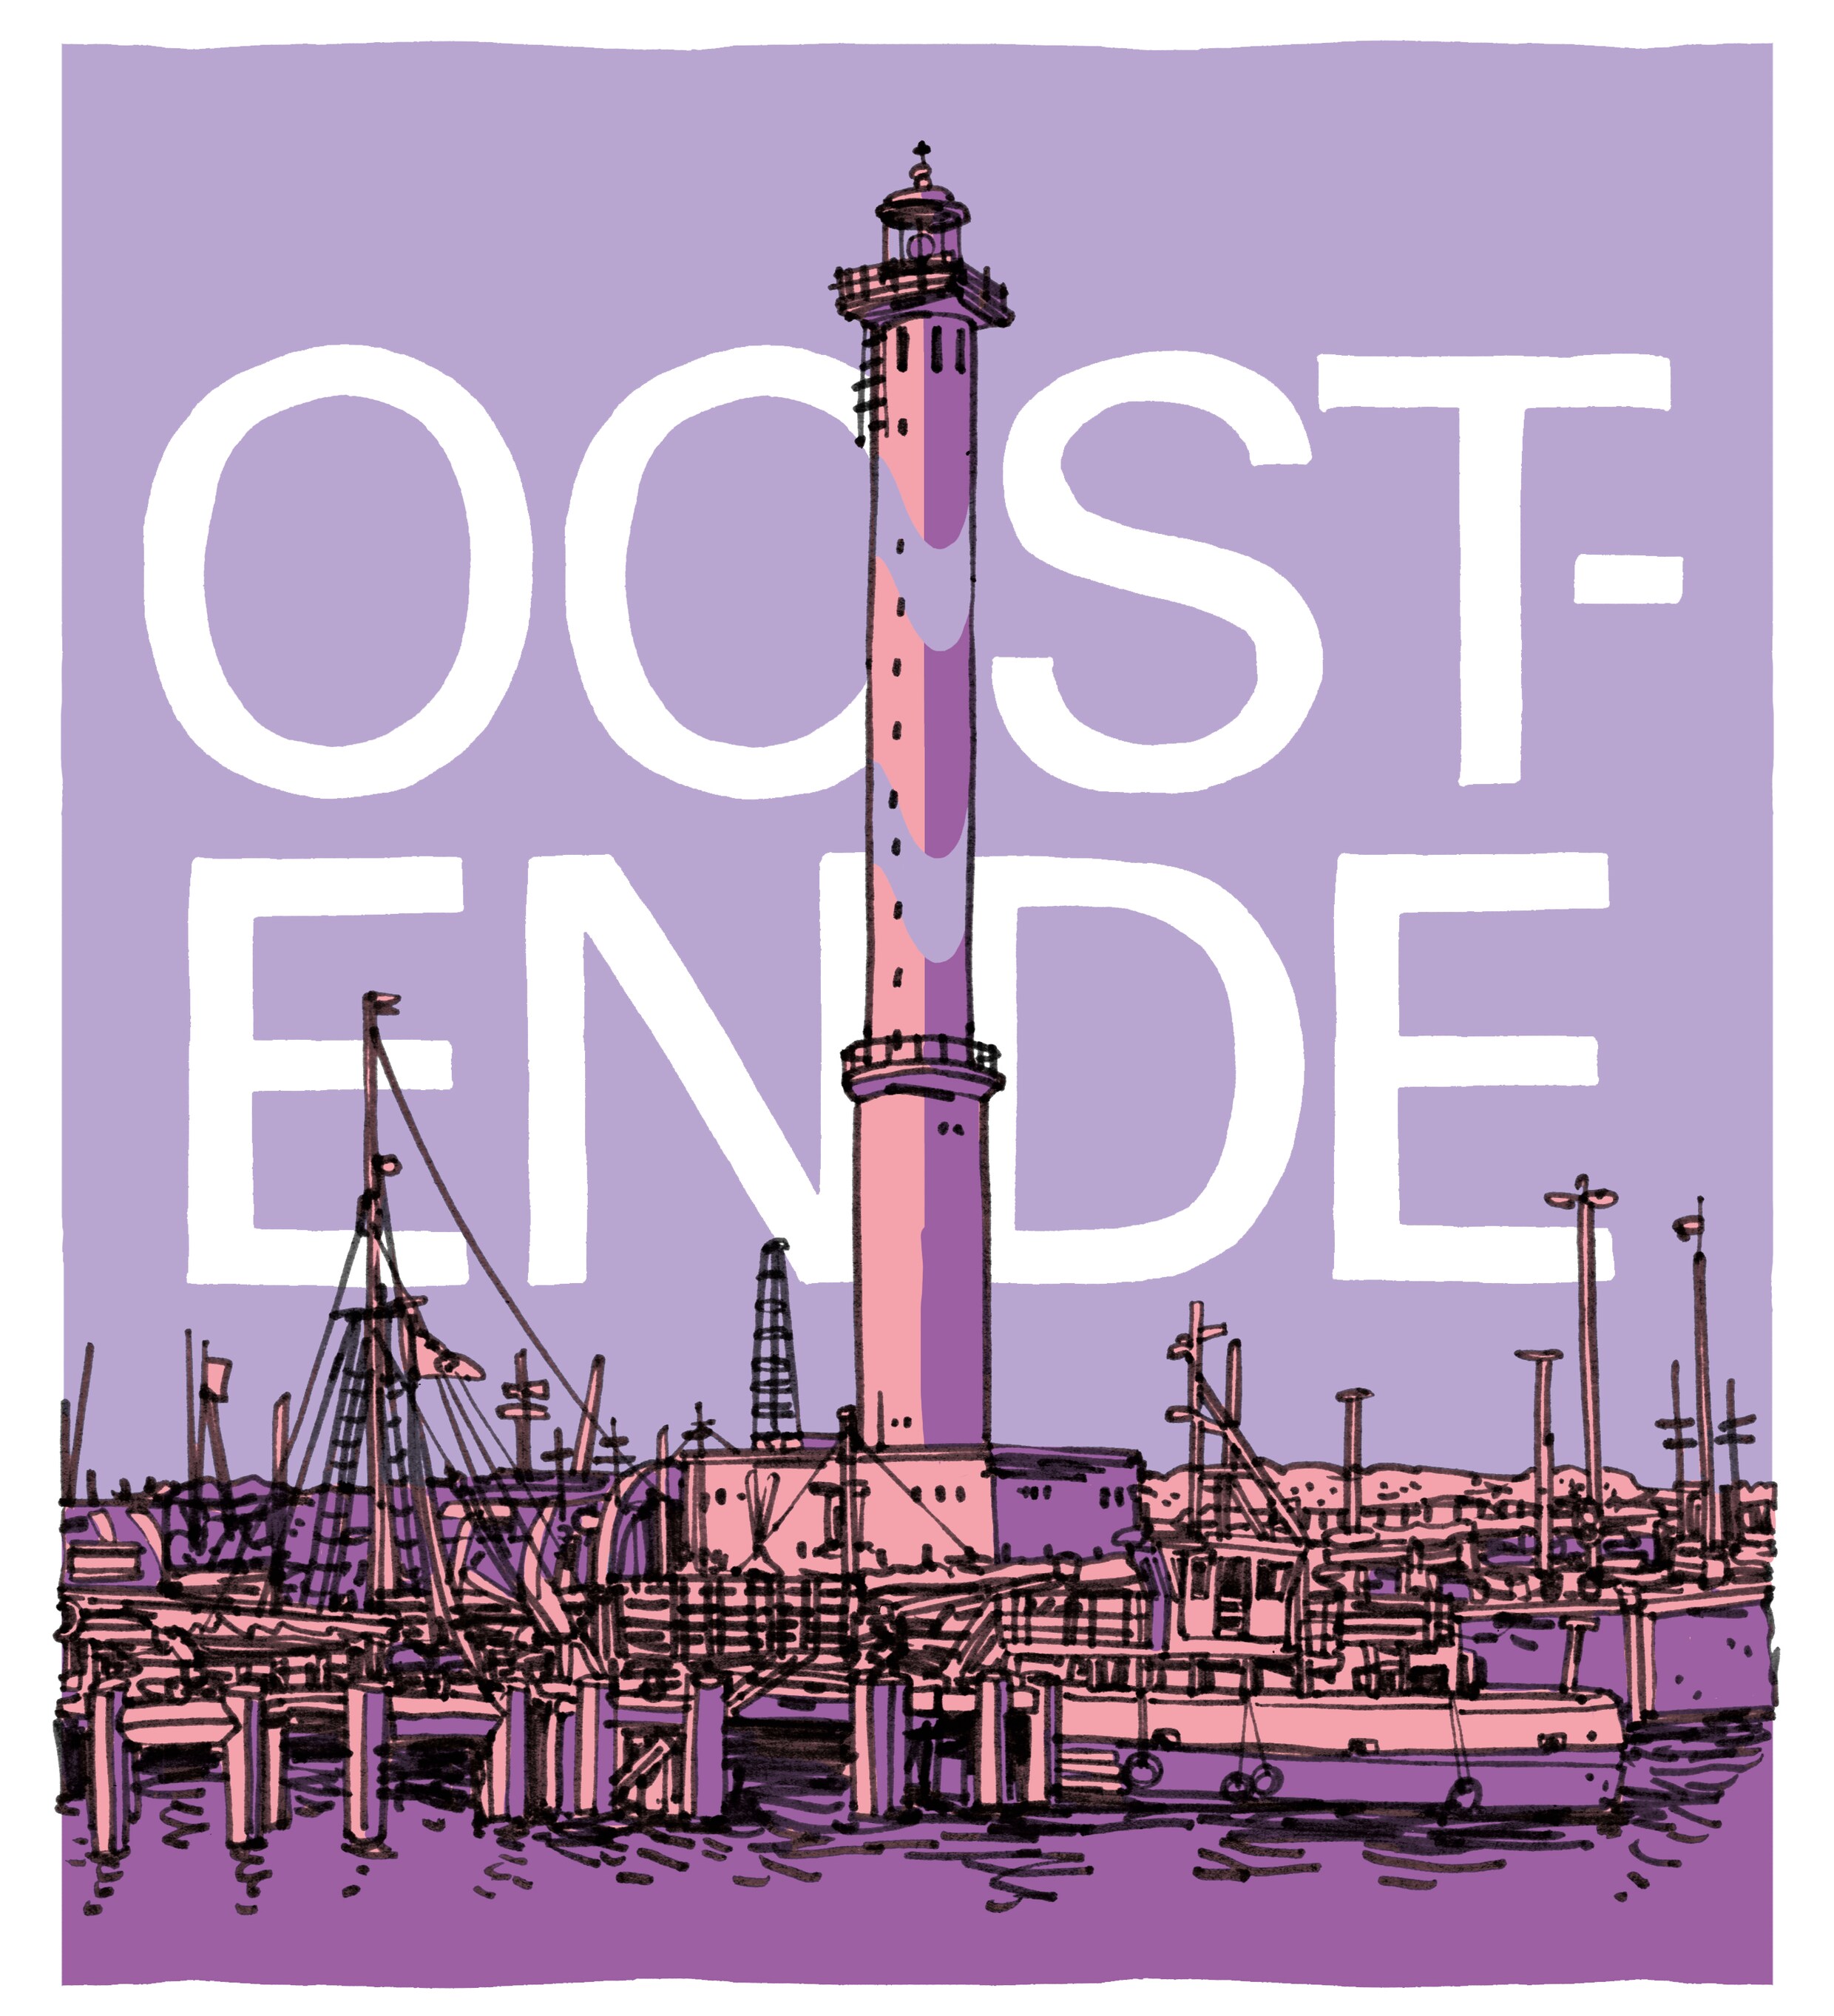 No nonsense Oostende - Huiskamer bistro